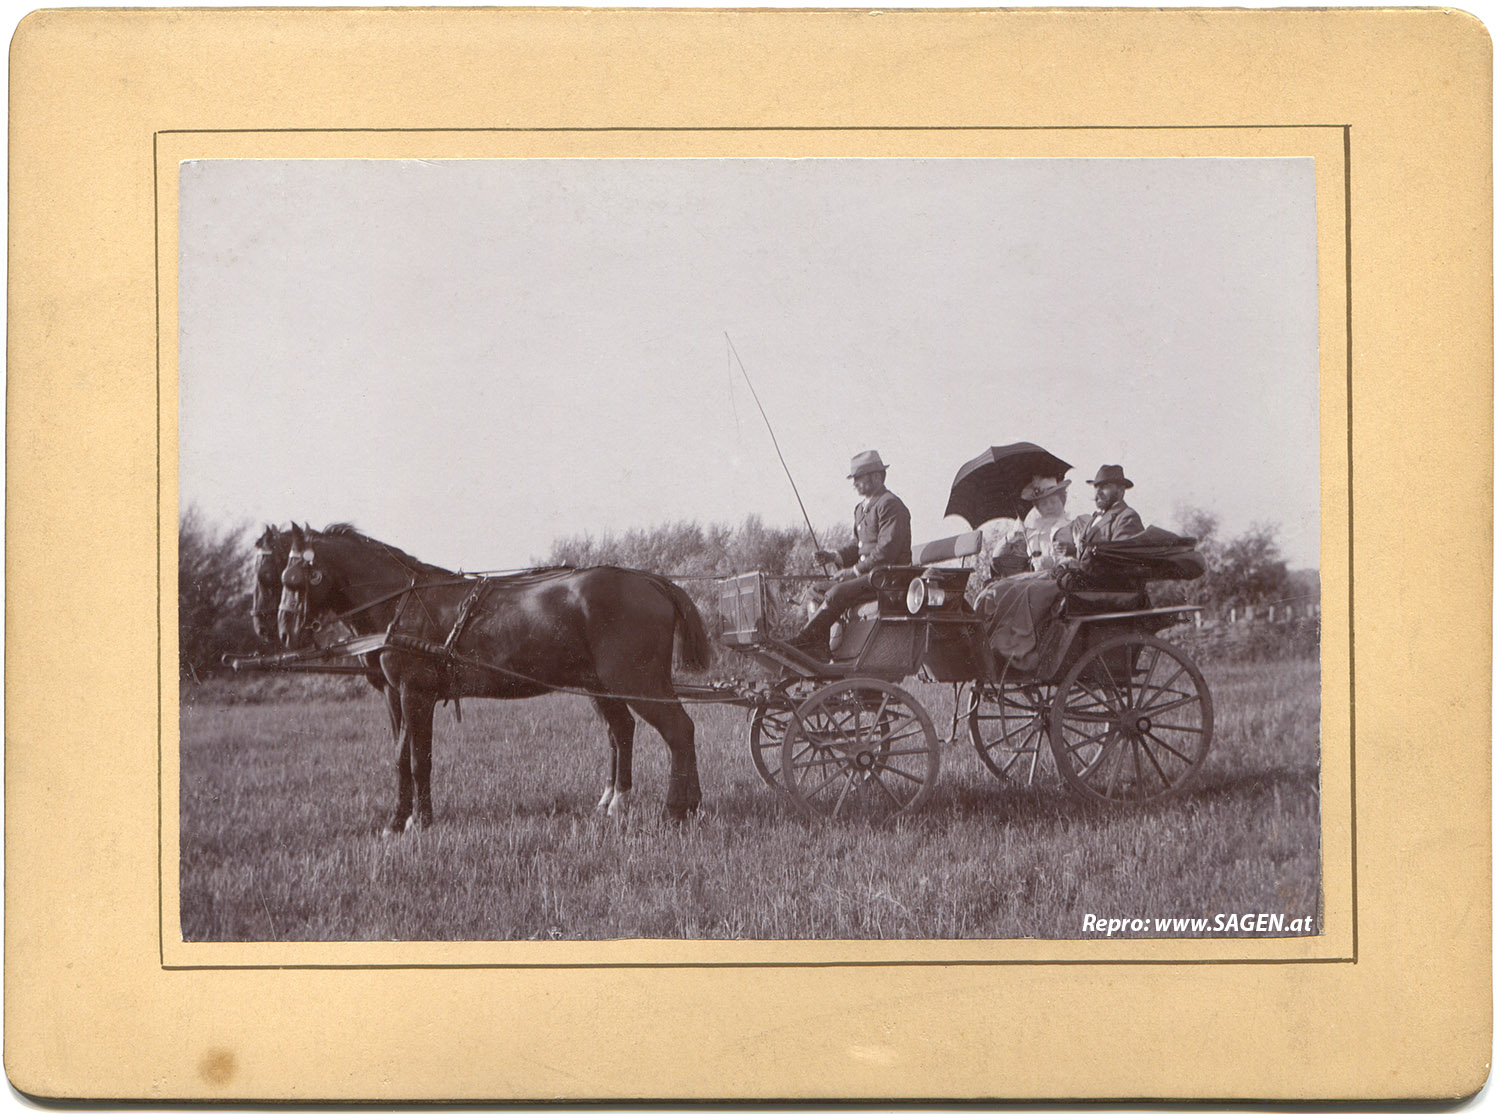 Kutschenfahrt um 1900